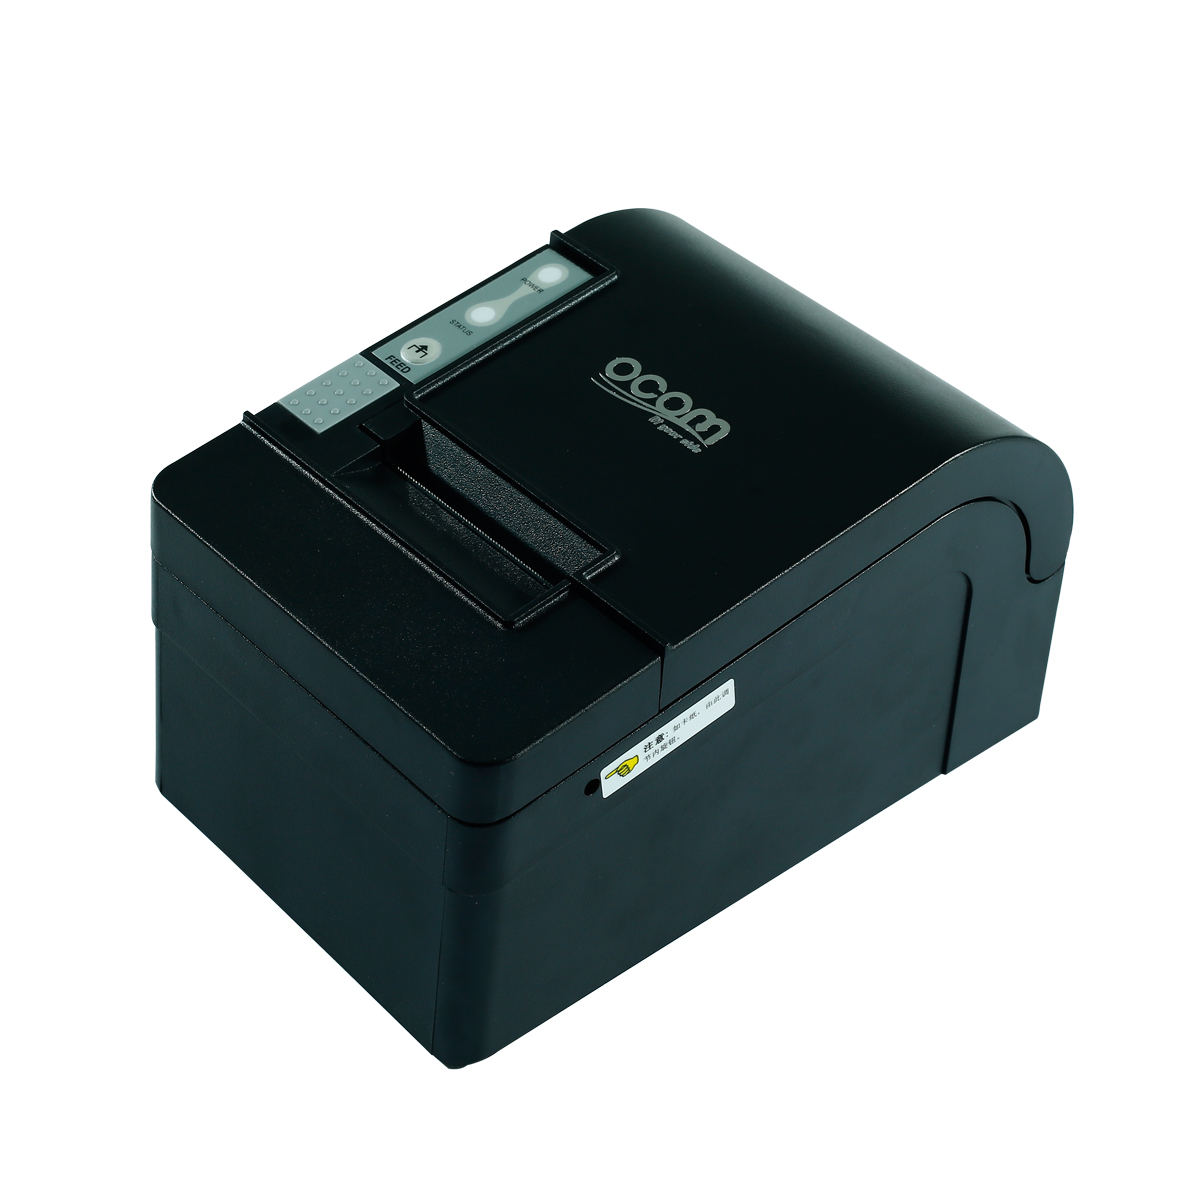 Impressora de recibos térmicos OCPP-58C-U 58mm com cortador automático